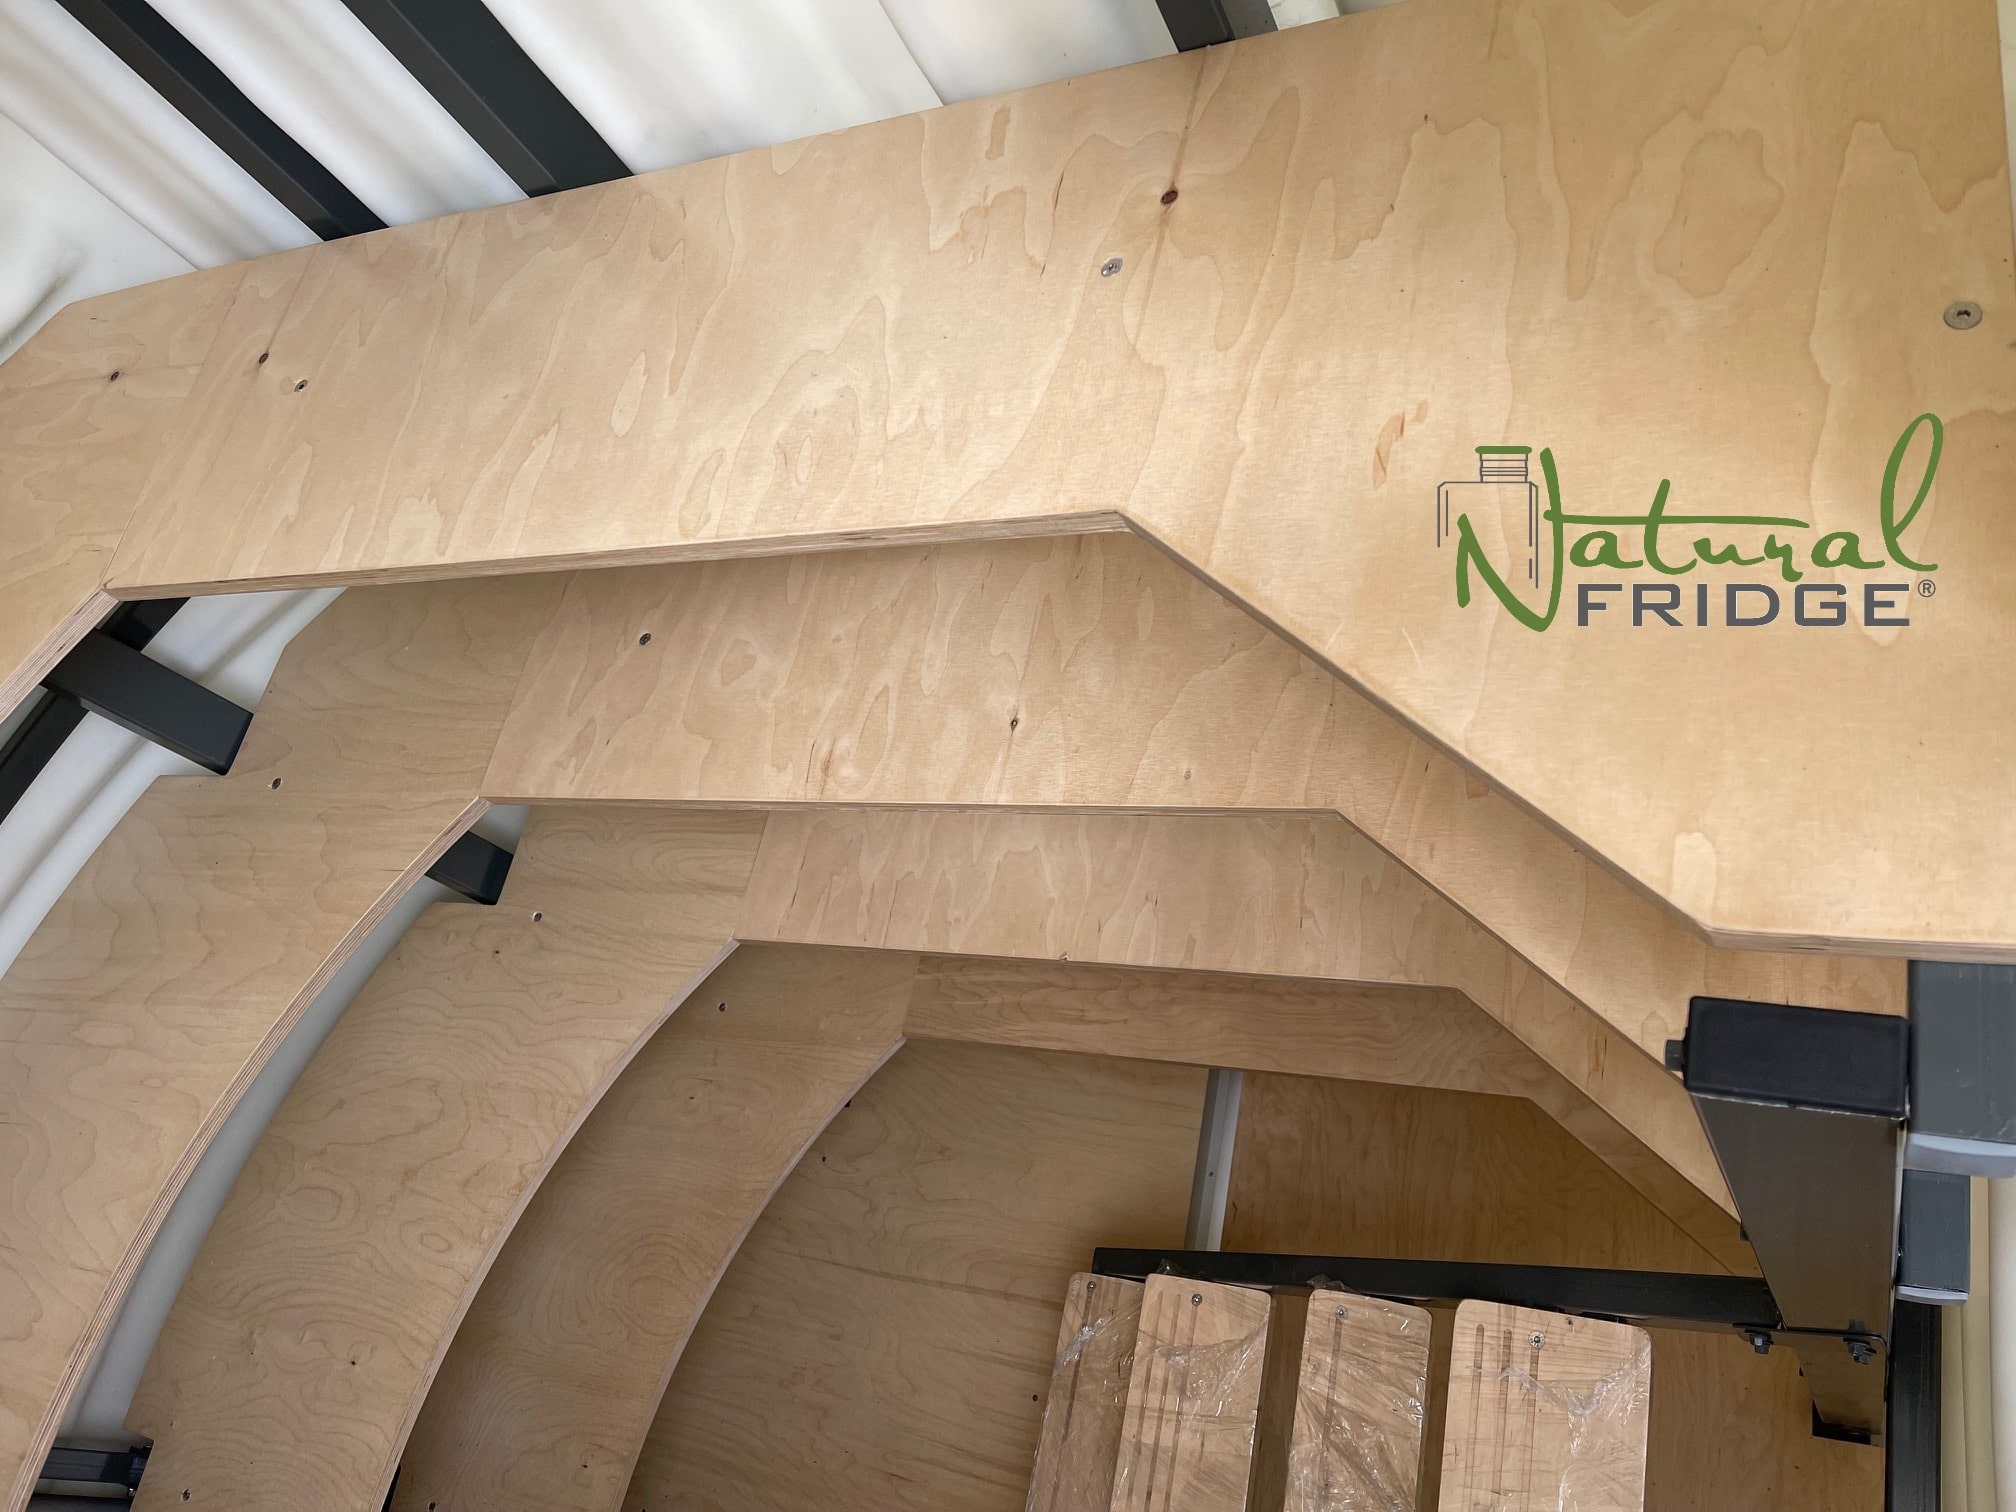 Gartenkeller NaturkÜhlschrank aus Kunststoff 2,0 m x 1,75 m mit schrägem Eingang - Natural FRIDGE aus Polen 2022